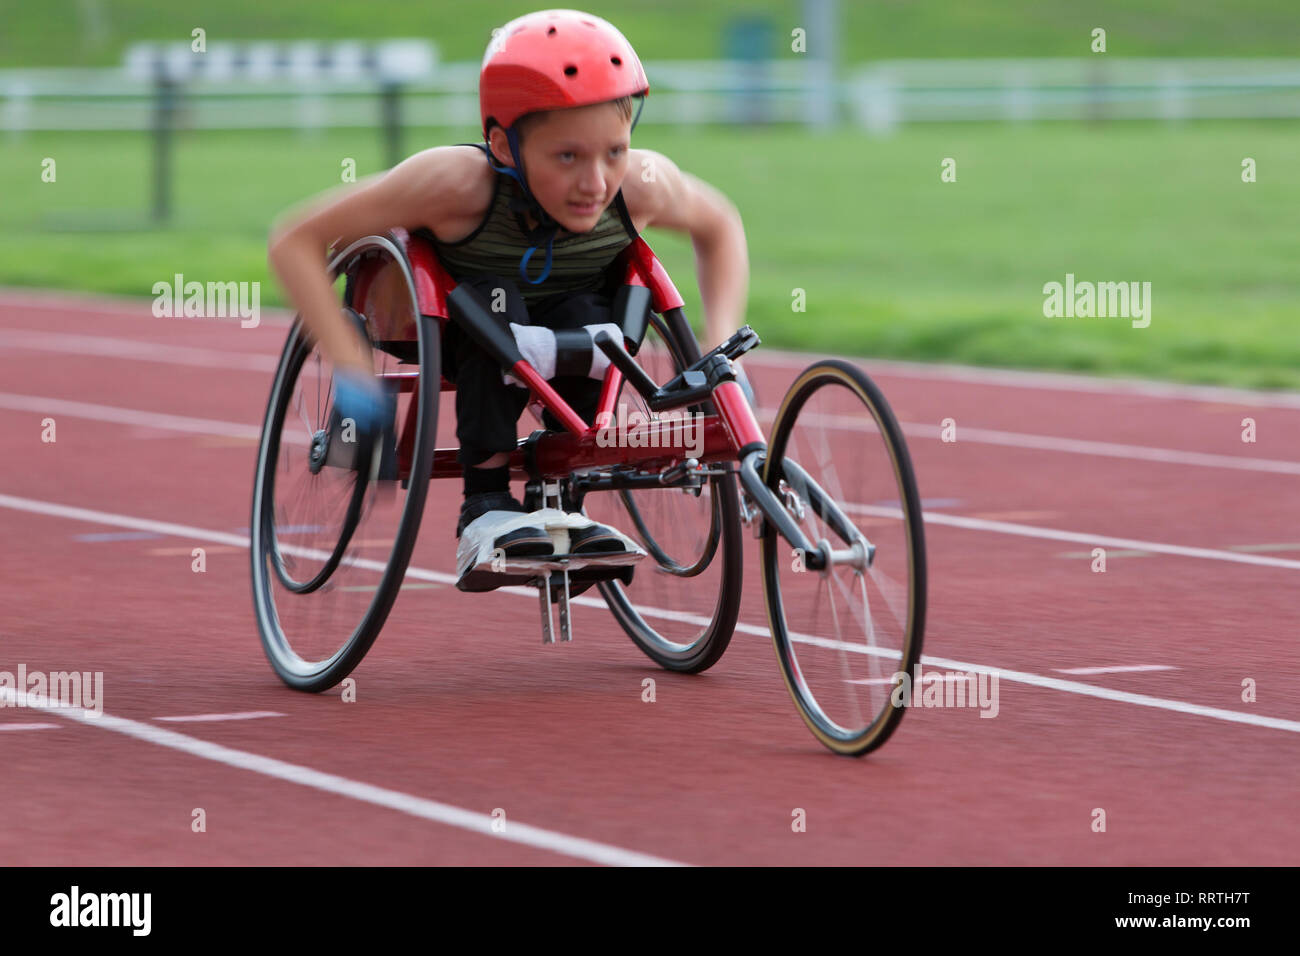 Déterminé, tenace adolescente athlète paraplégique en accélérant le long de la piste en course en fauteuil roulant de sport Banque D'Images